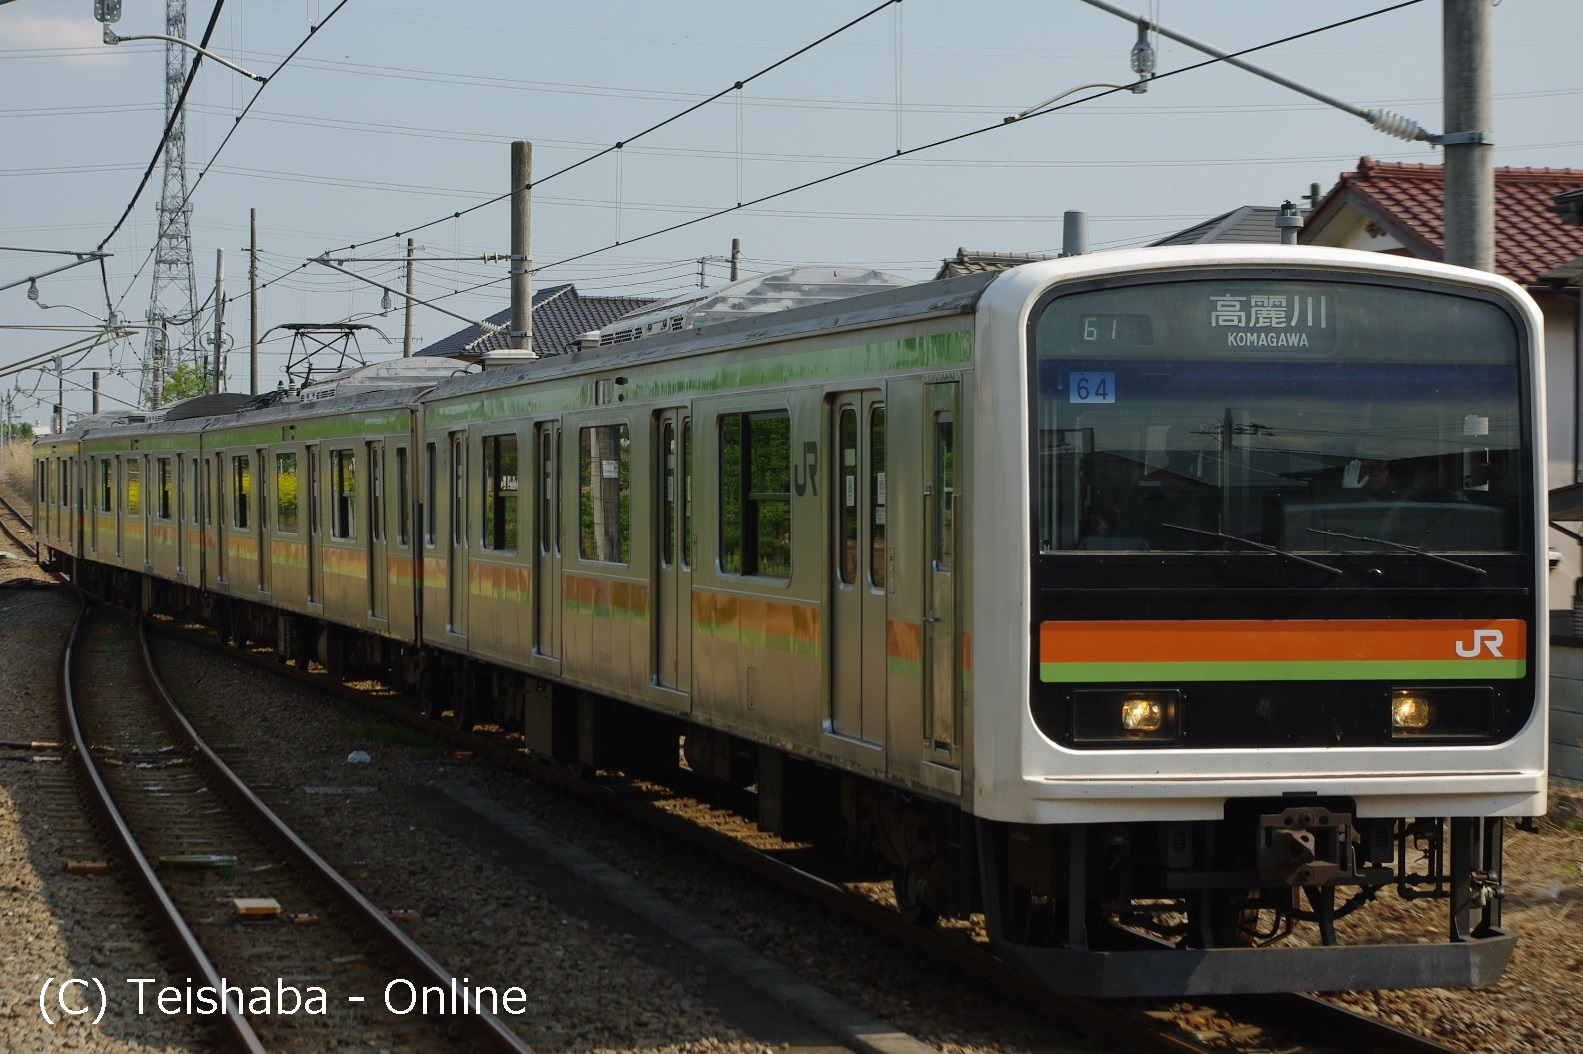 八高線 - Teishaba On-line